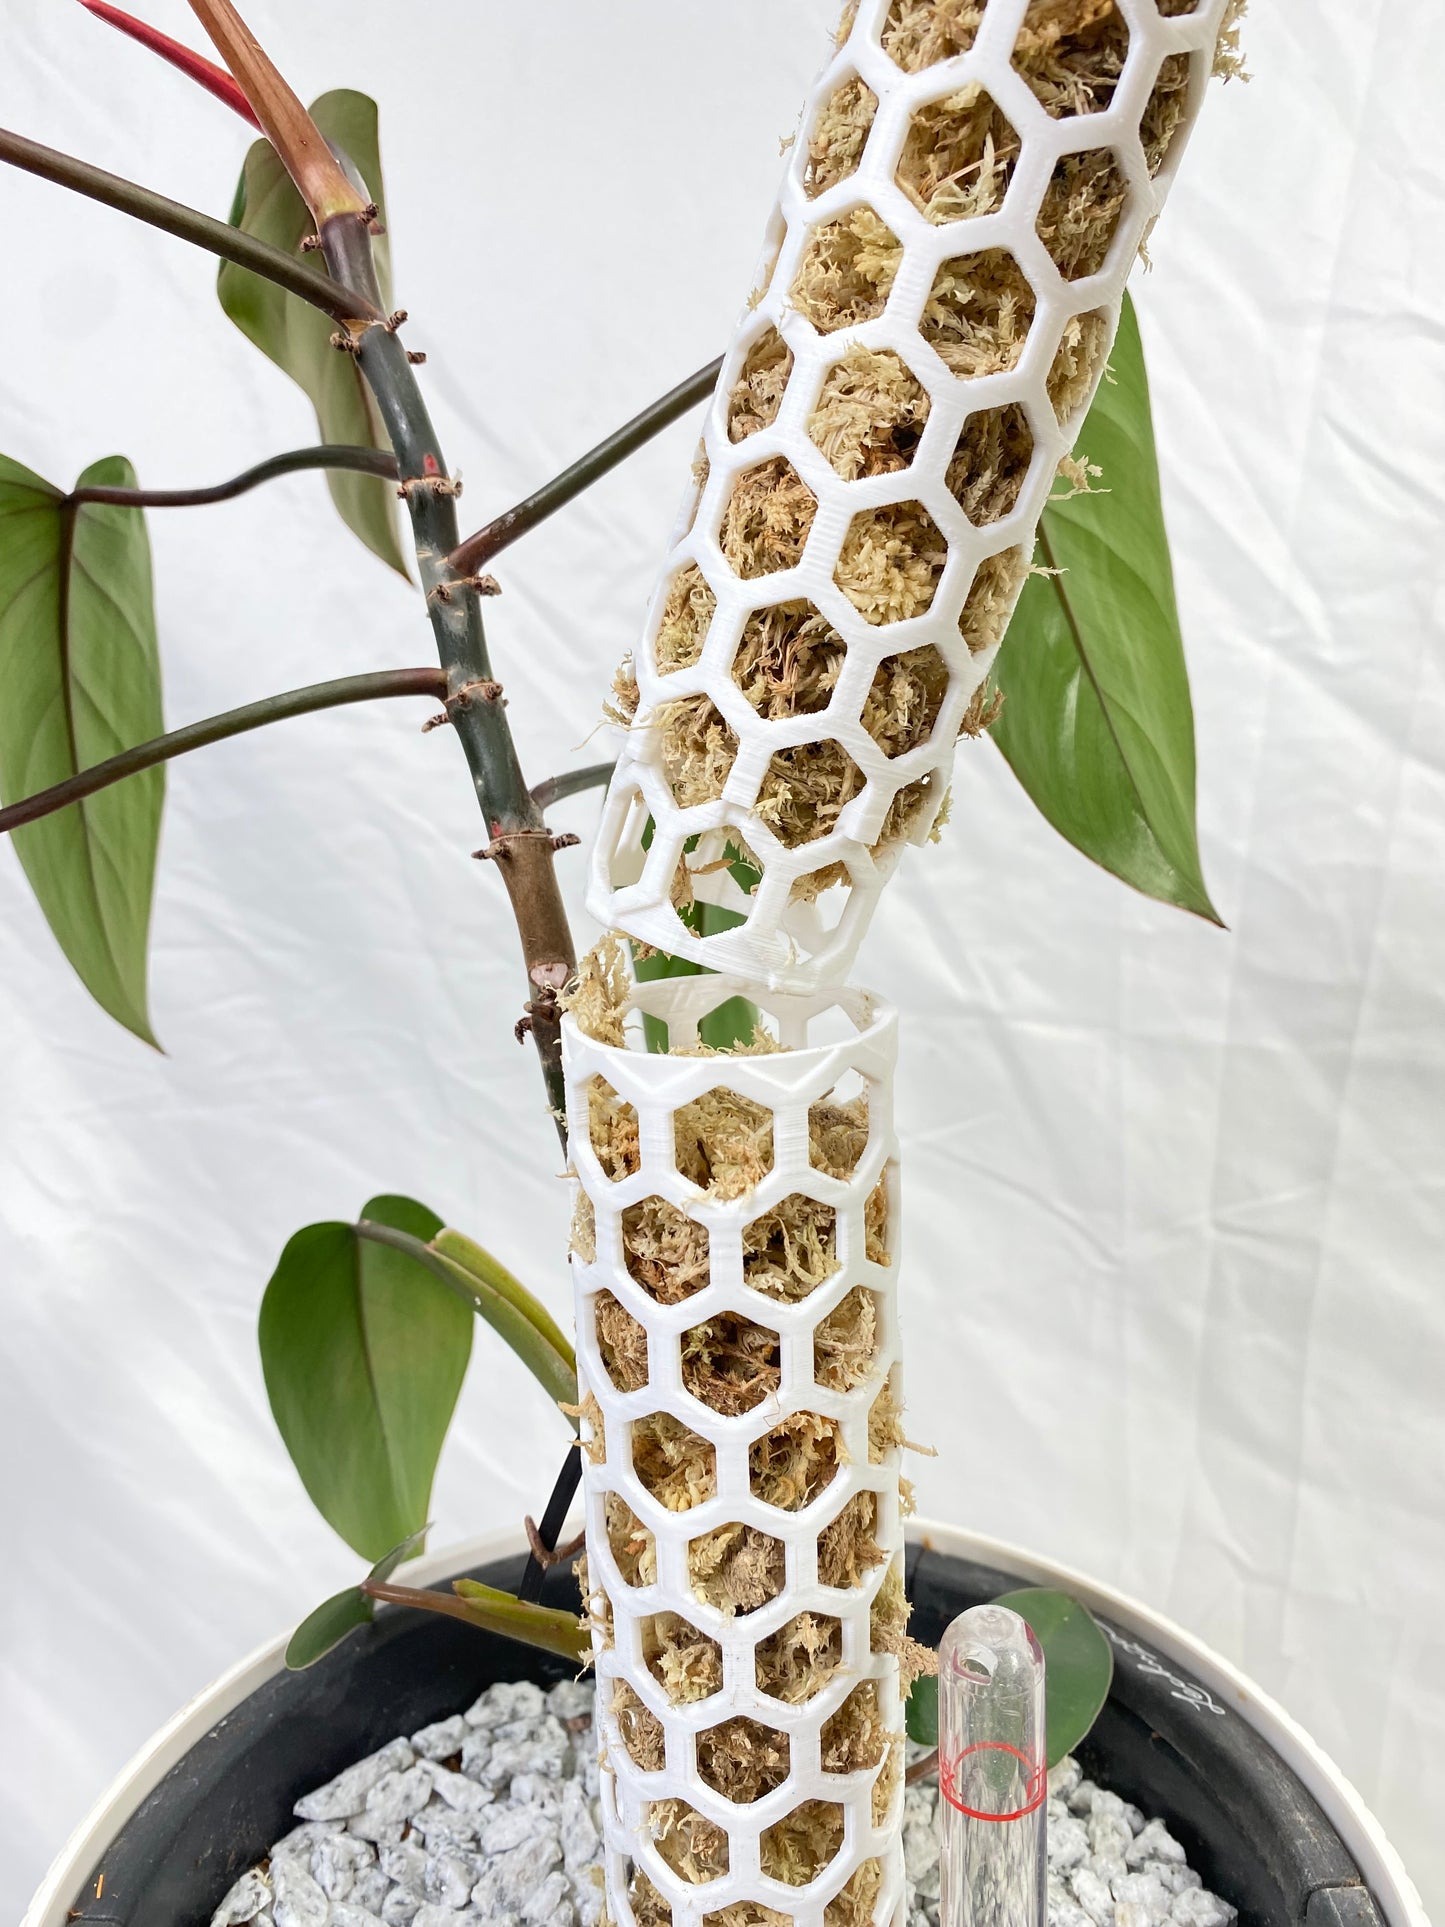 2.40″Φ/Large Designer Moss Pole - Modular Extendable Plant Moss Pole with Self-Watering Features